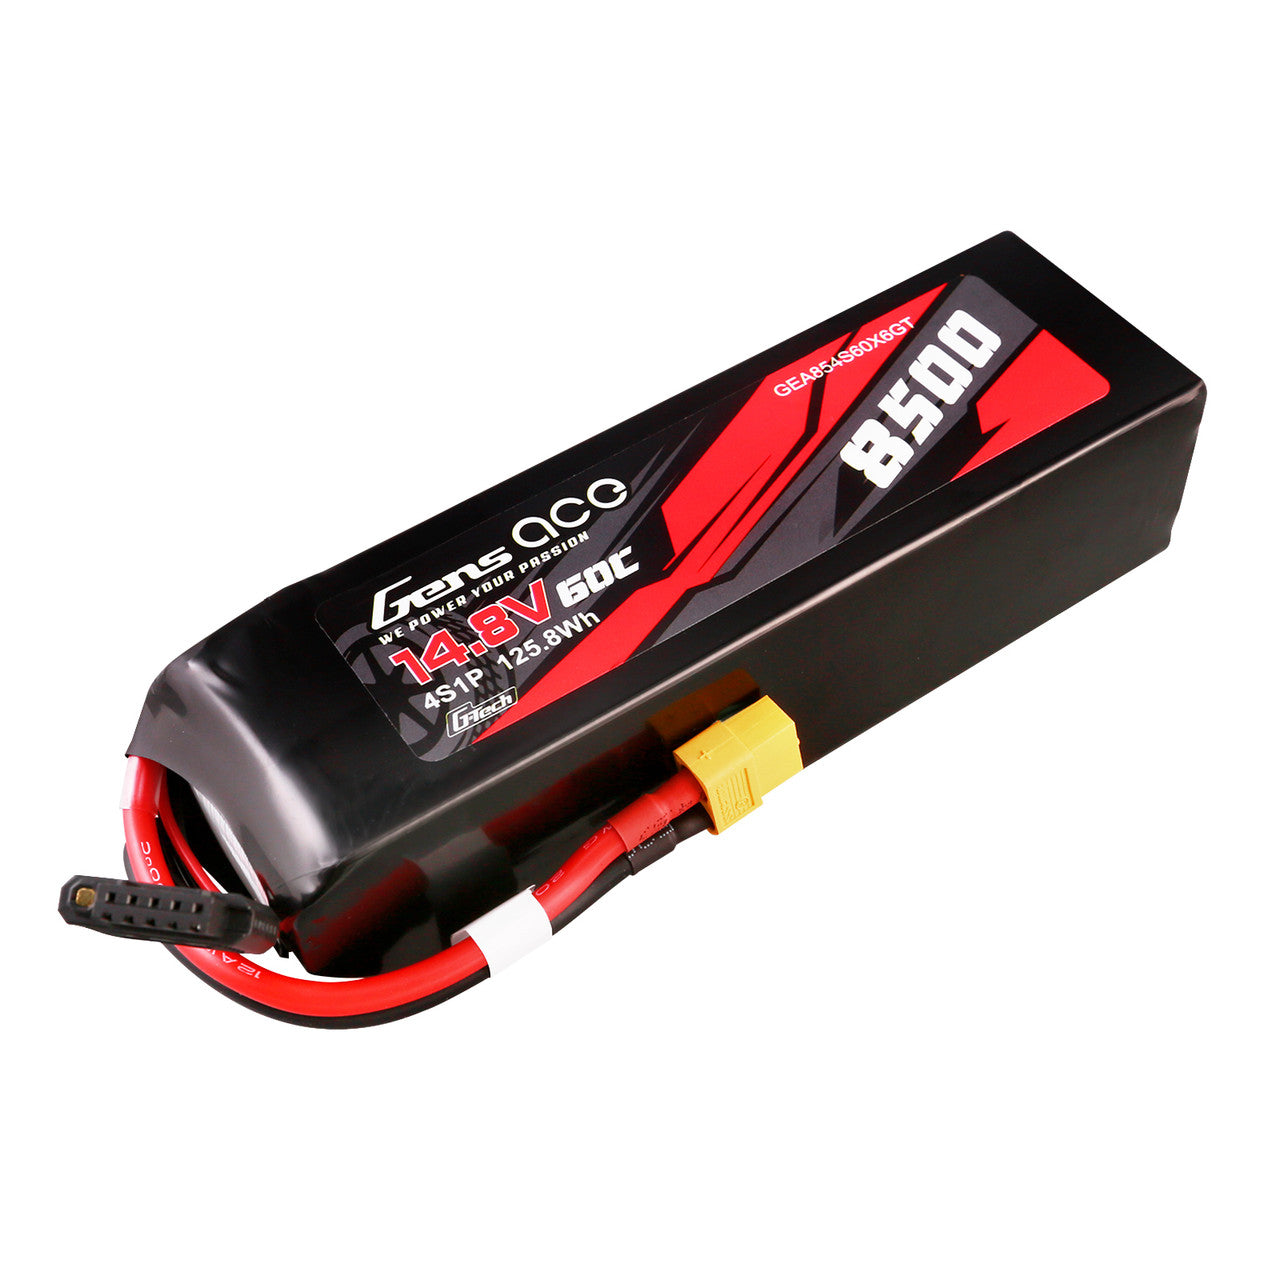 GEA854S60X6GT Gens Ace 14.8V 60C 4s 8500mAh g-tech Lipo batterie avec prise XT60 pour voiture Xmaxx 8S